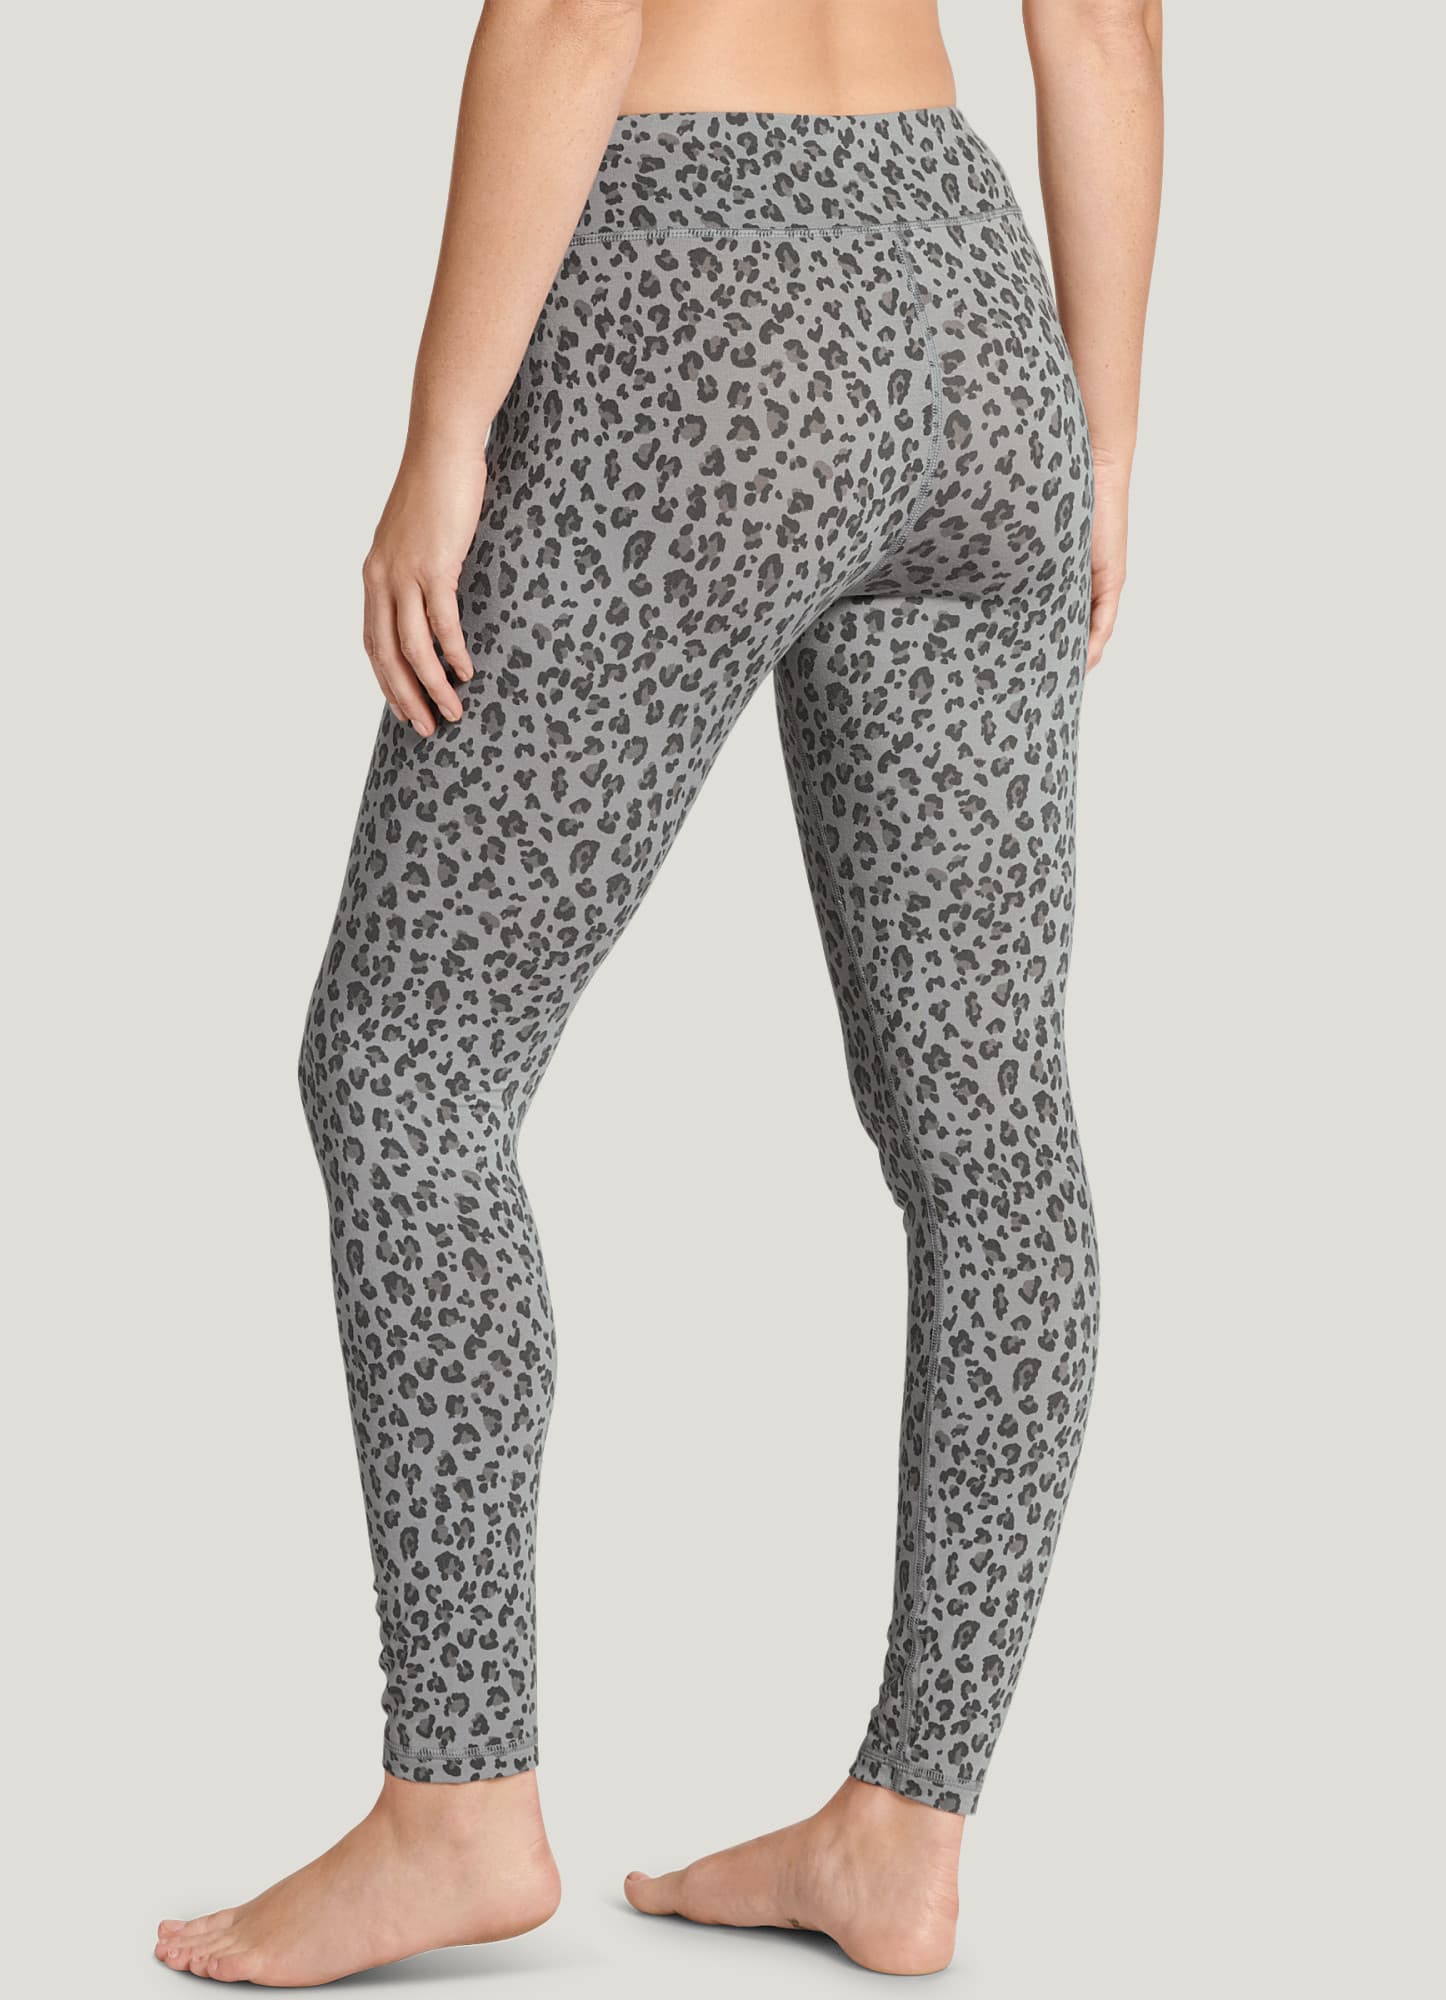 Leopard Print Curvy Super Stretch Tights